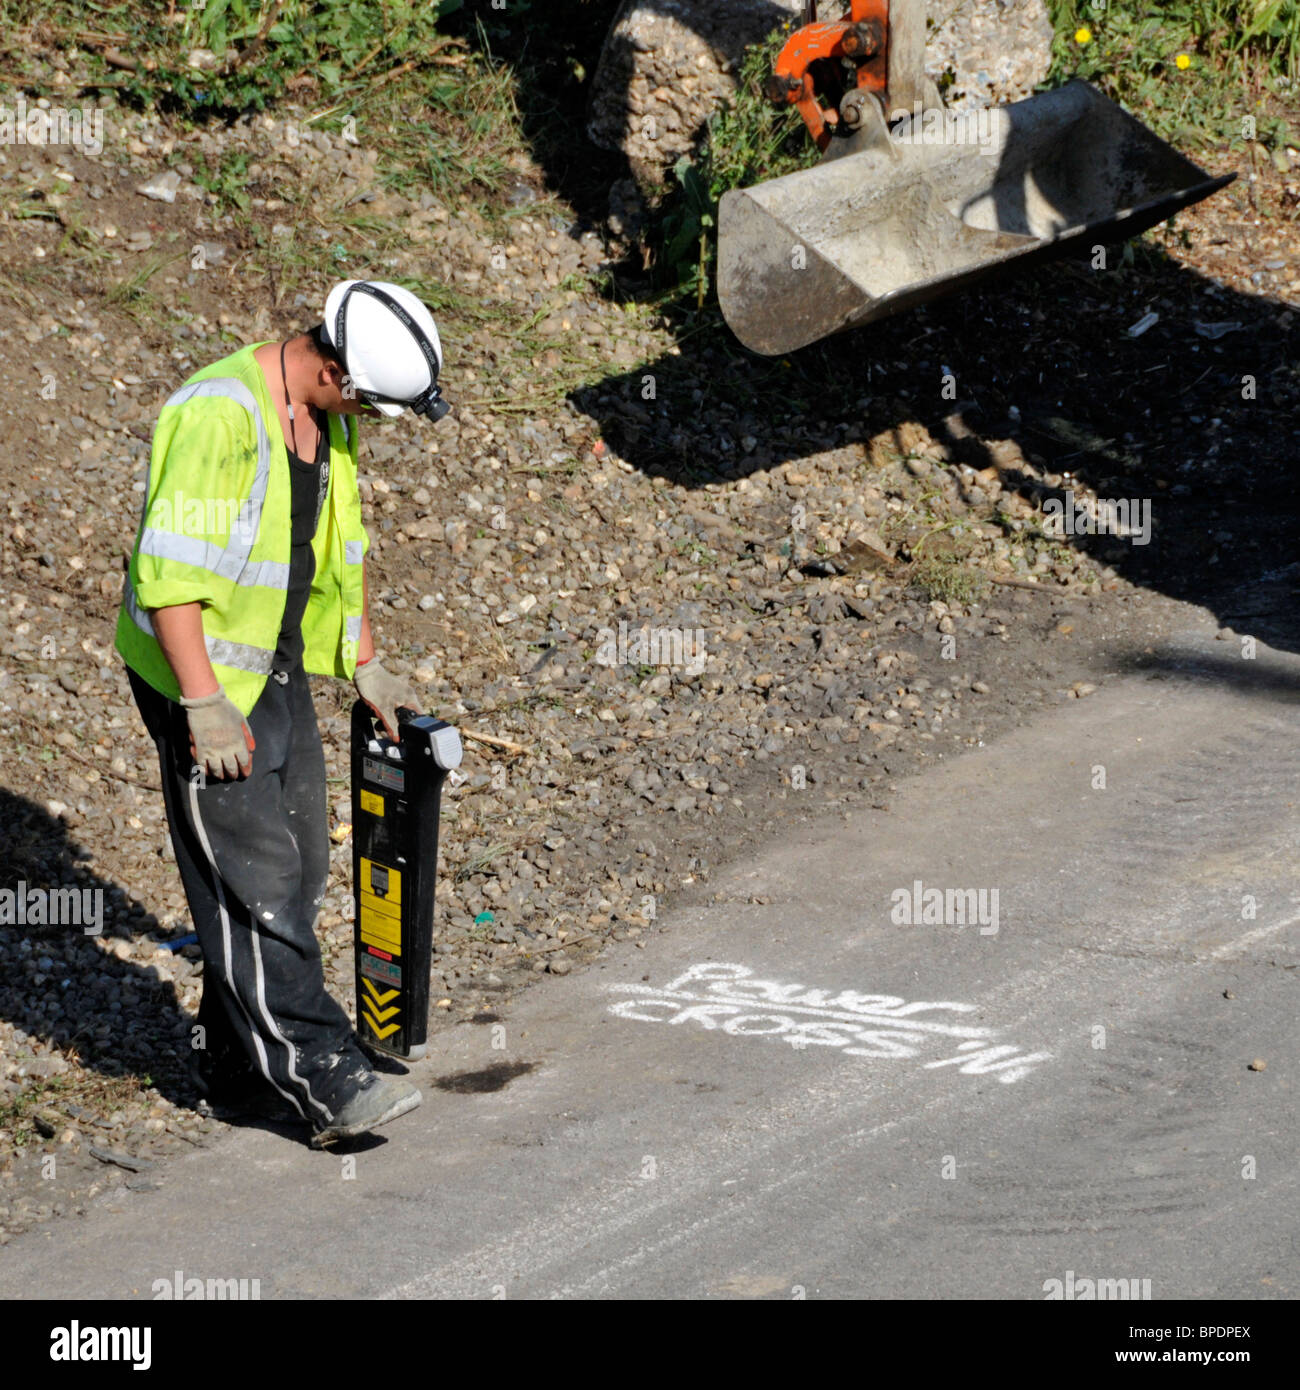 Road Works M25 ouvrier de l'épaule dur d'autoroute à l'aide de la main Scope Pipe et le gadget de localisation de câble avant que le creuseur commence le travail Brentwood Essex Angleterre Royaume-Uni Banque D'Images